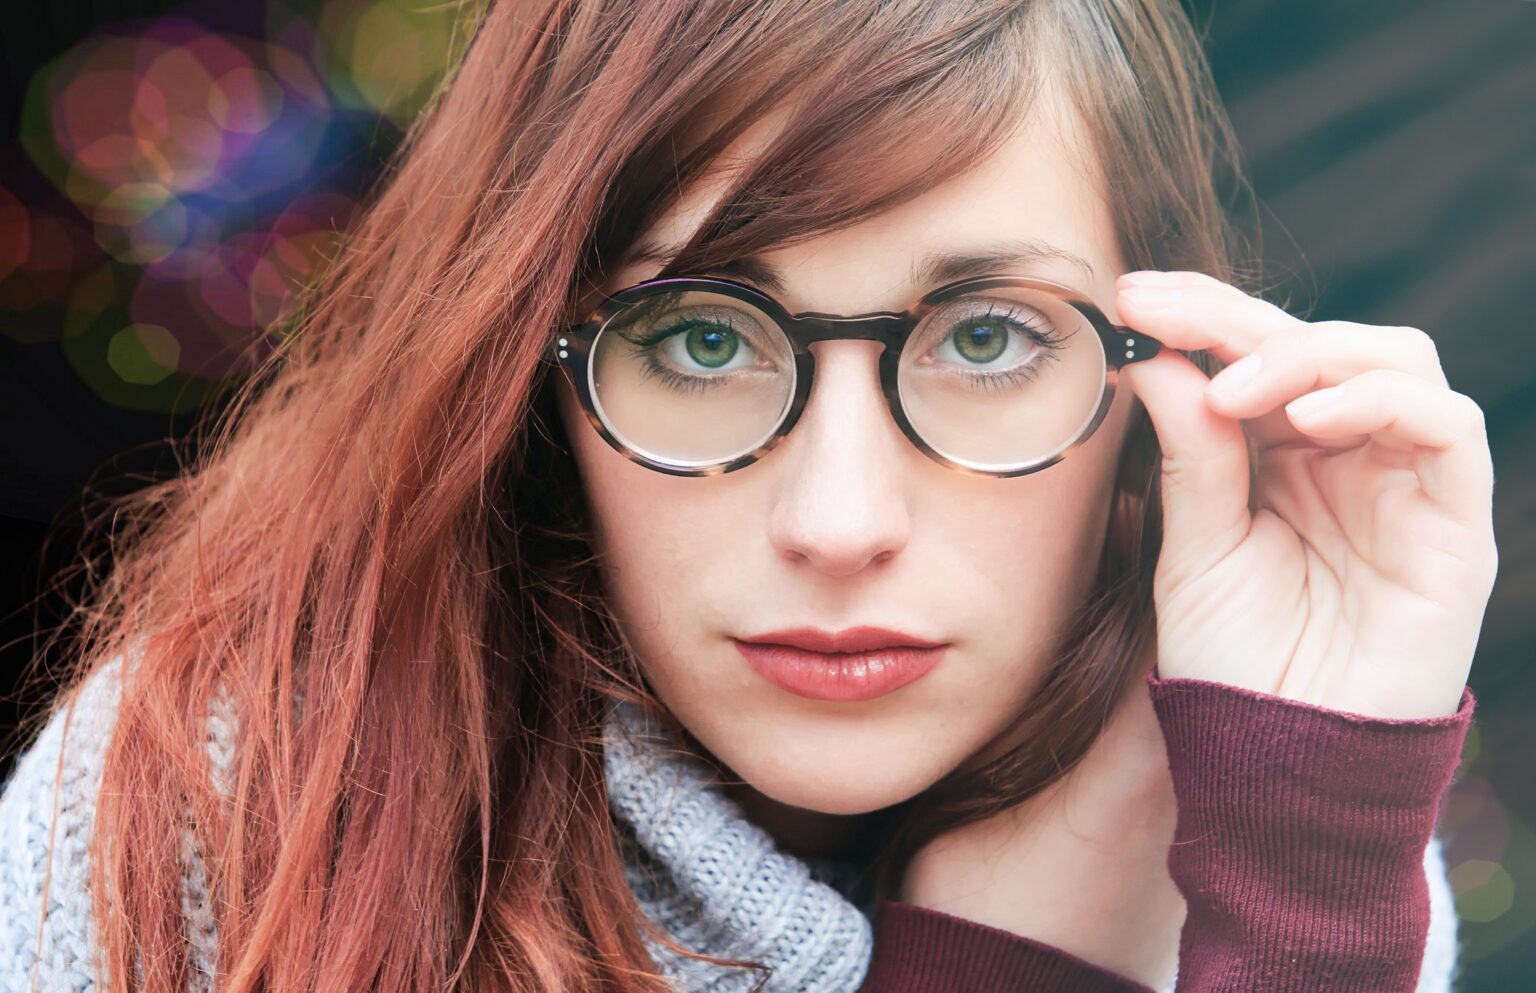 7 მიზეზი, რატომ უნდა აირჩიოთ მხედველობის სათვალე და დაივიწყოთ კონტაქტური ლინზები